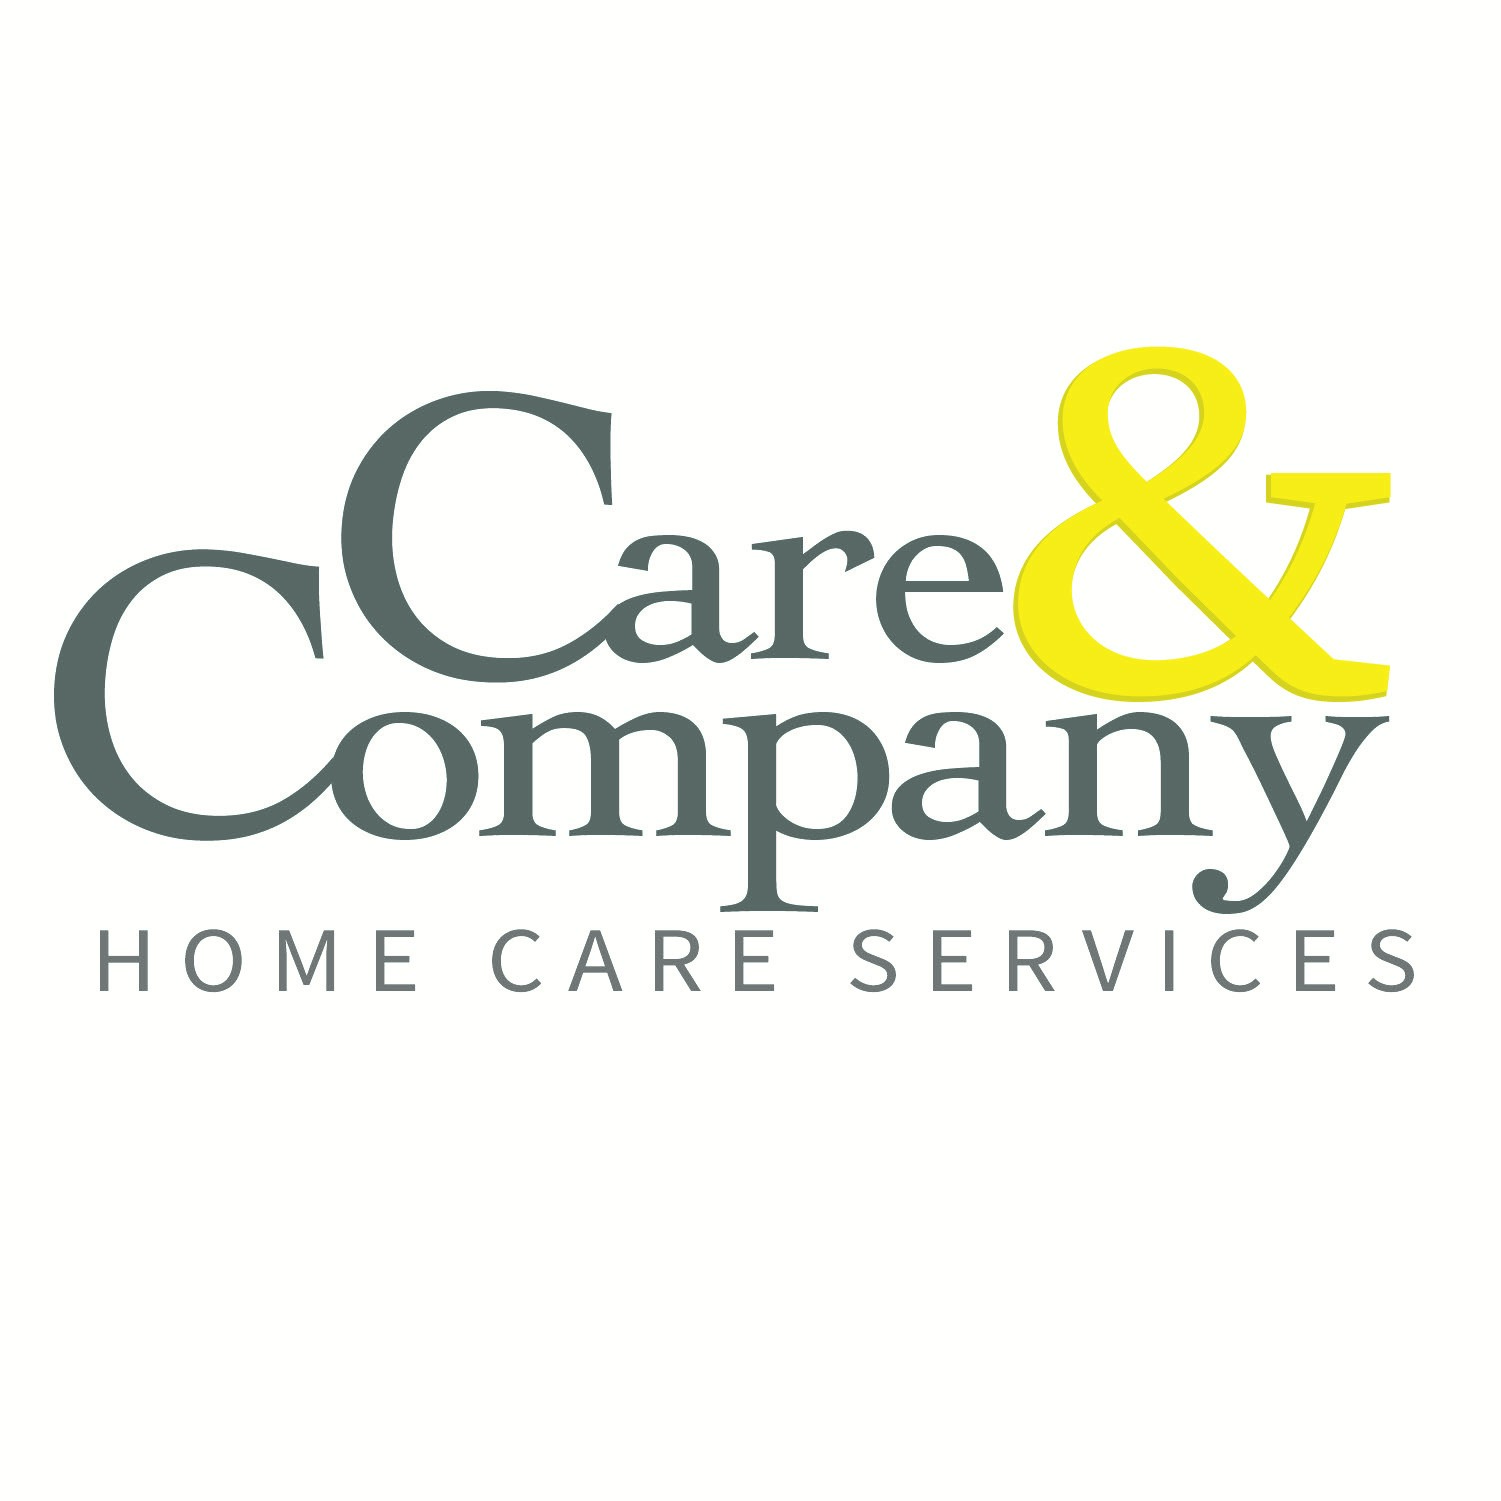 Care & Company Services Ltd